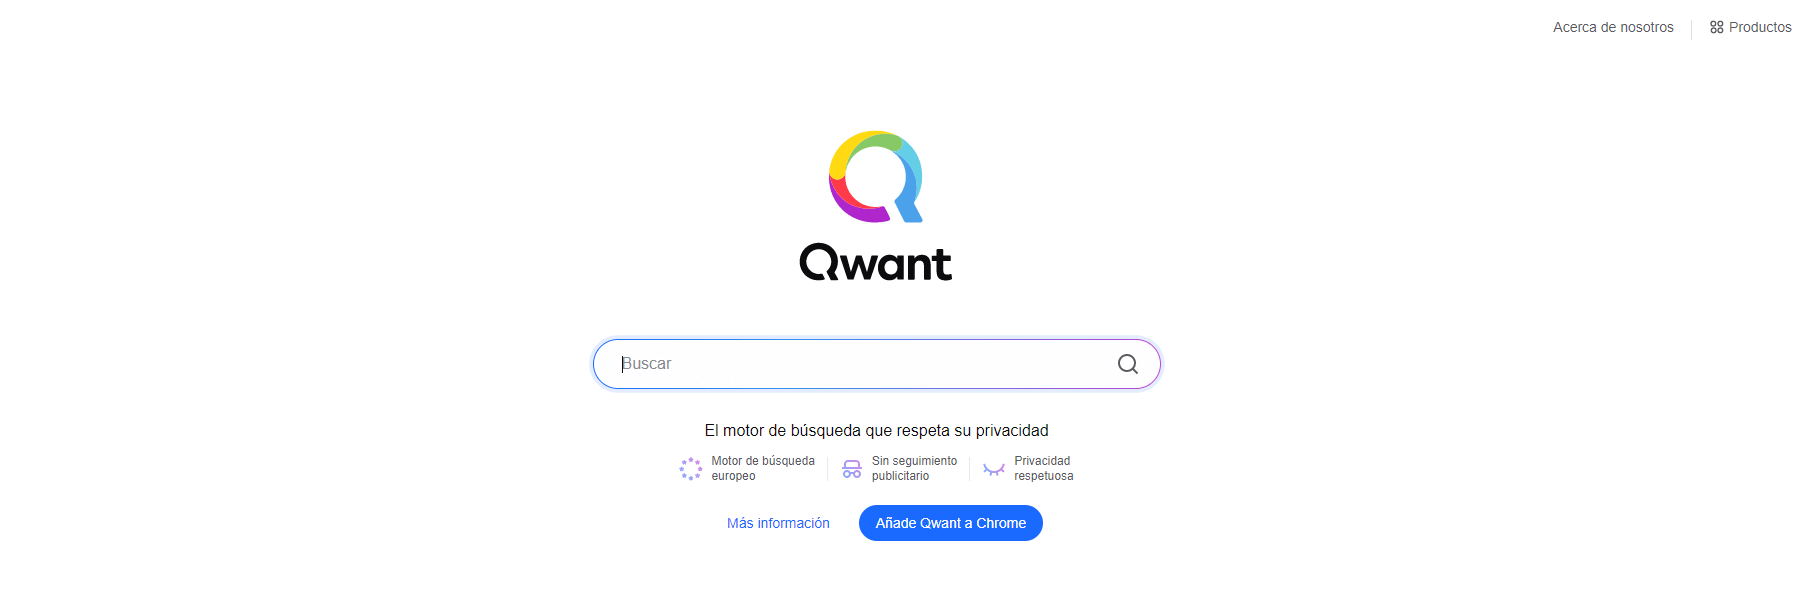 Página de inicio de Qwant